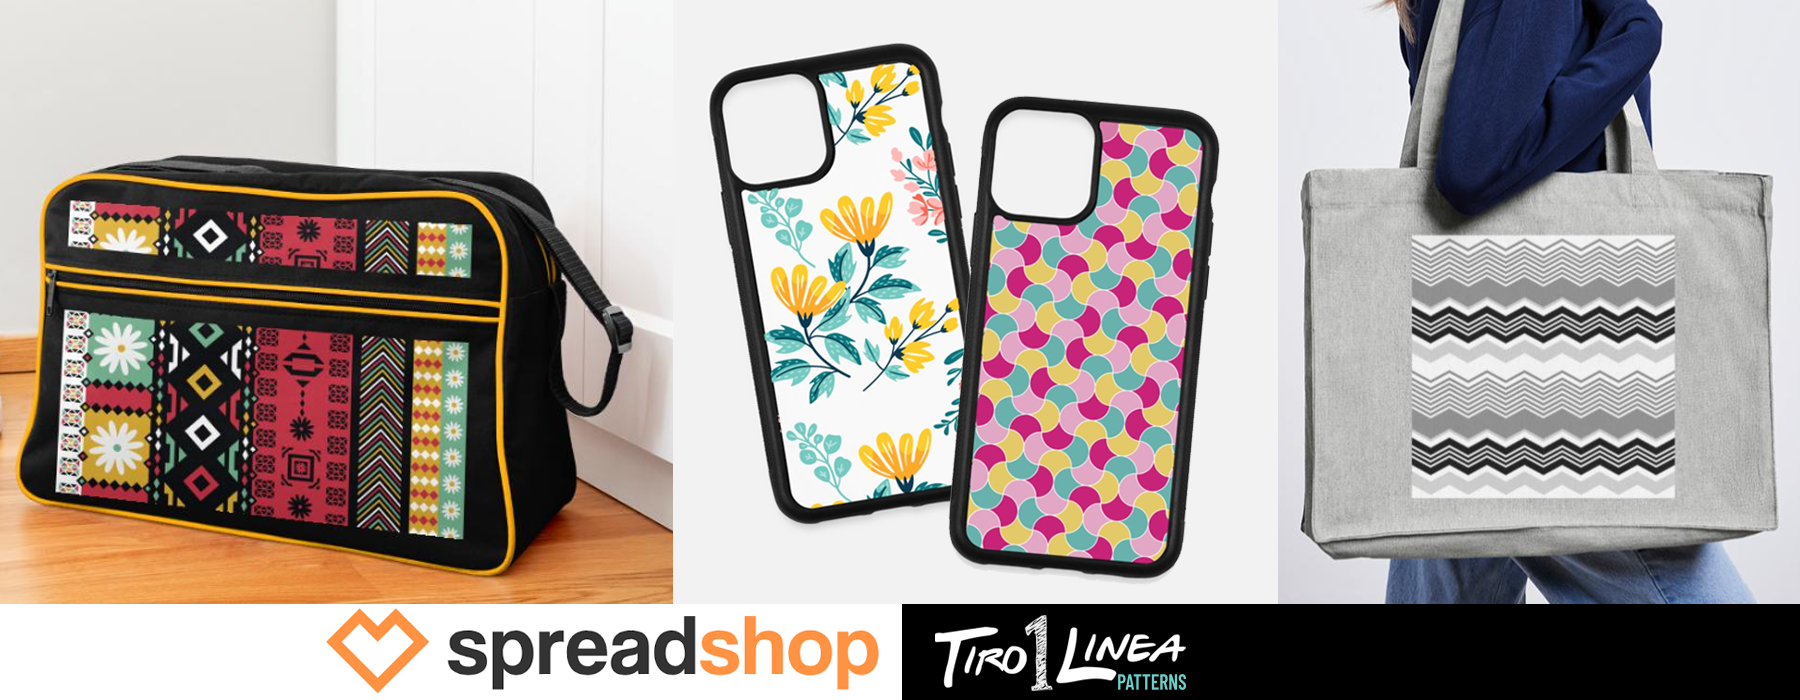 Tienda Spreadshop Tiro1Linea Patterns